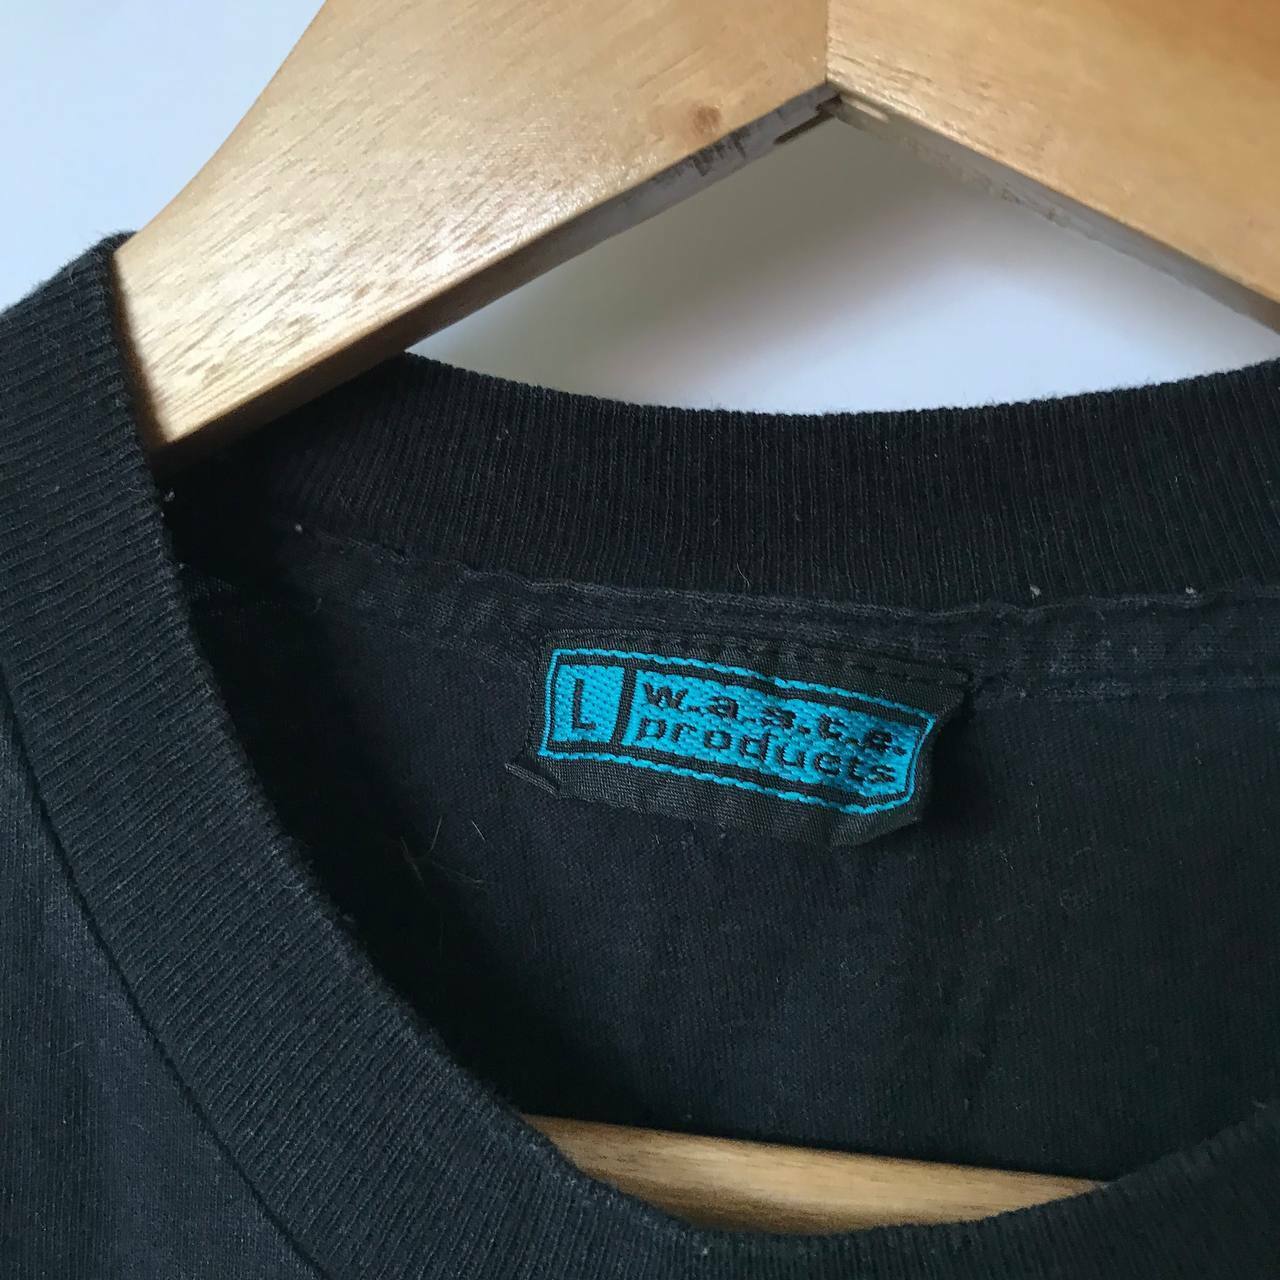 Maken Gentleman vriendelijk Tweede leerjaar 1997 Radiohead Kicking Squealing Gucci Little Piggy T Shirt Black L Vintage  90's | eBay